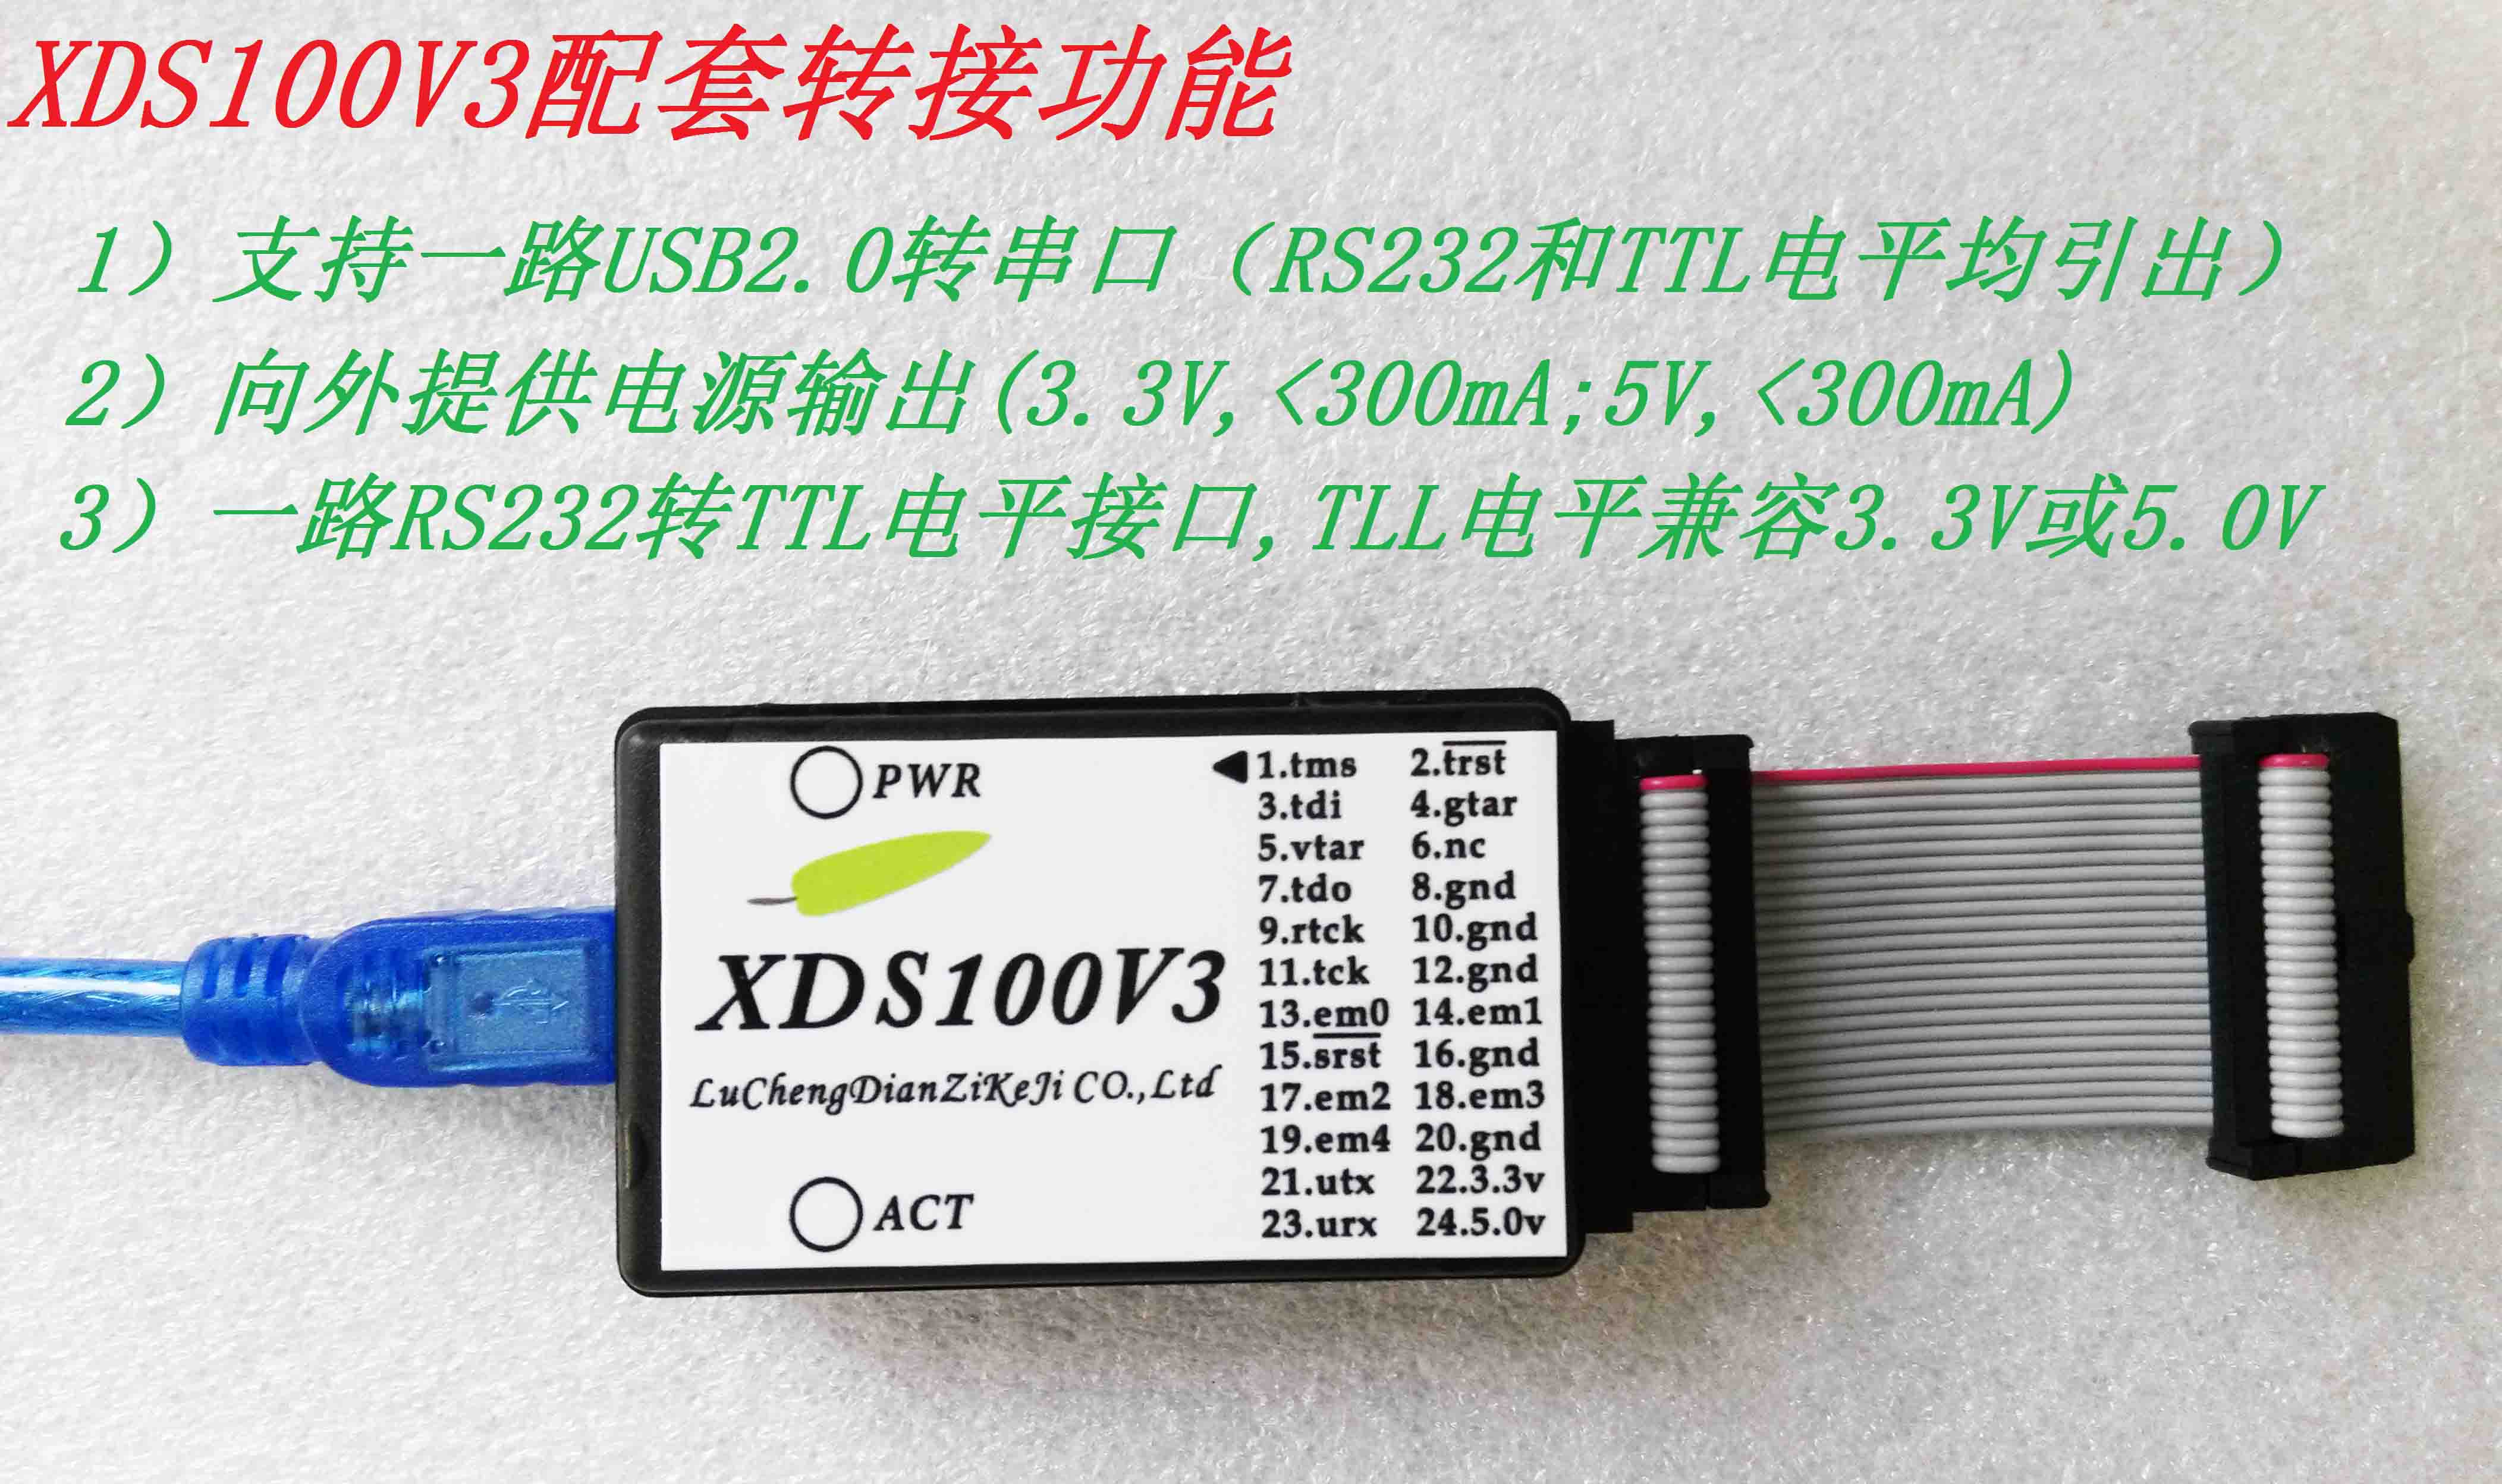 XDS100V3,TI DSP-ARM 仿真器,仿真、串口并行,5V、3.3V强力输出